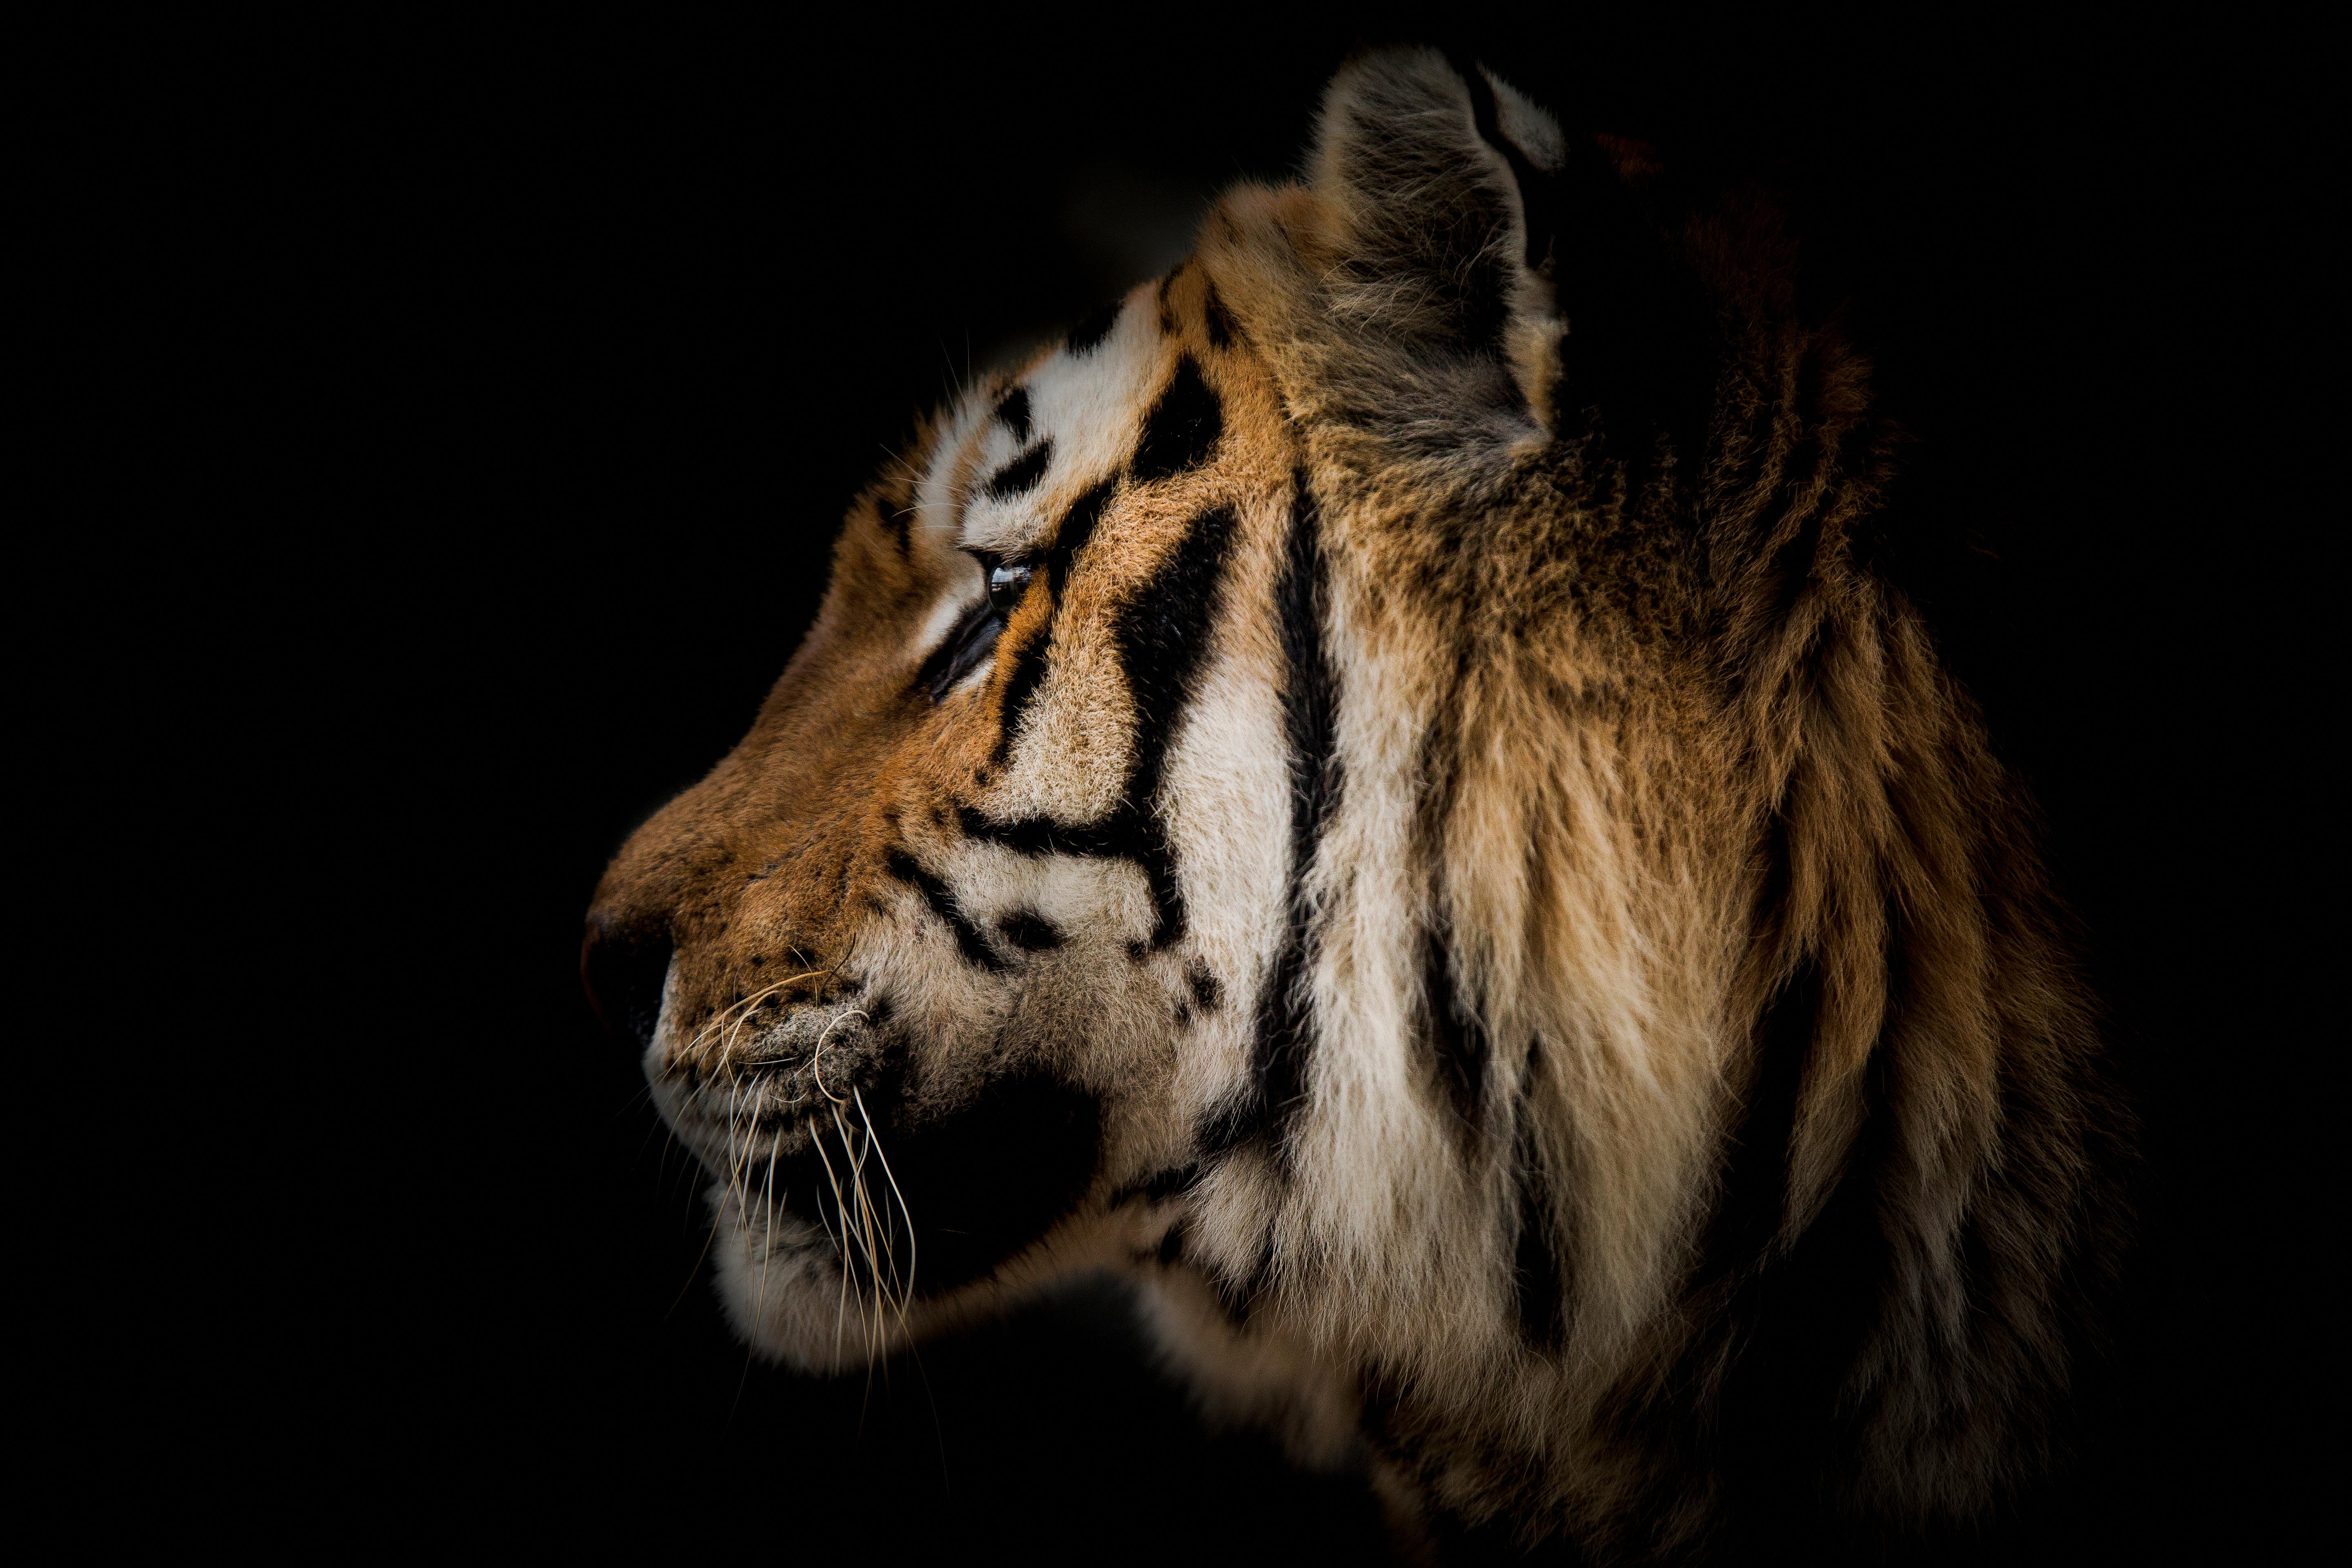 Black and White Photograph Shane Russeck - Photographie tigre 36x48 - Photographie d'art de la faune - Portrait de tigre non signé